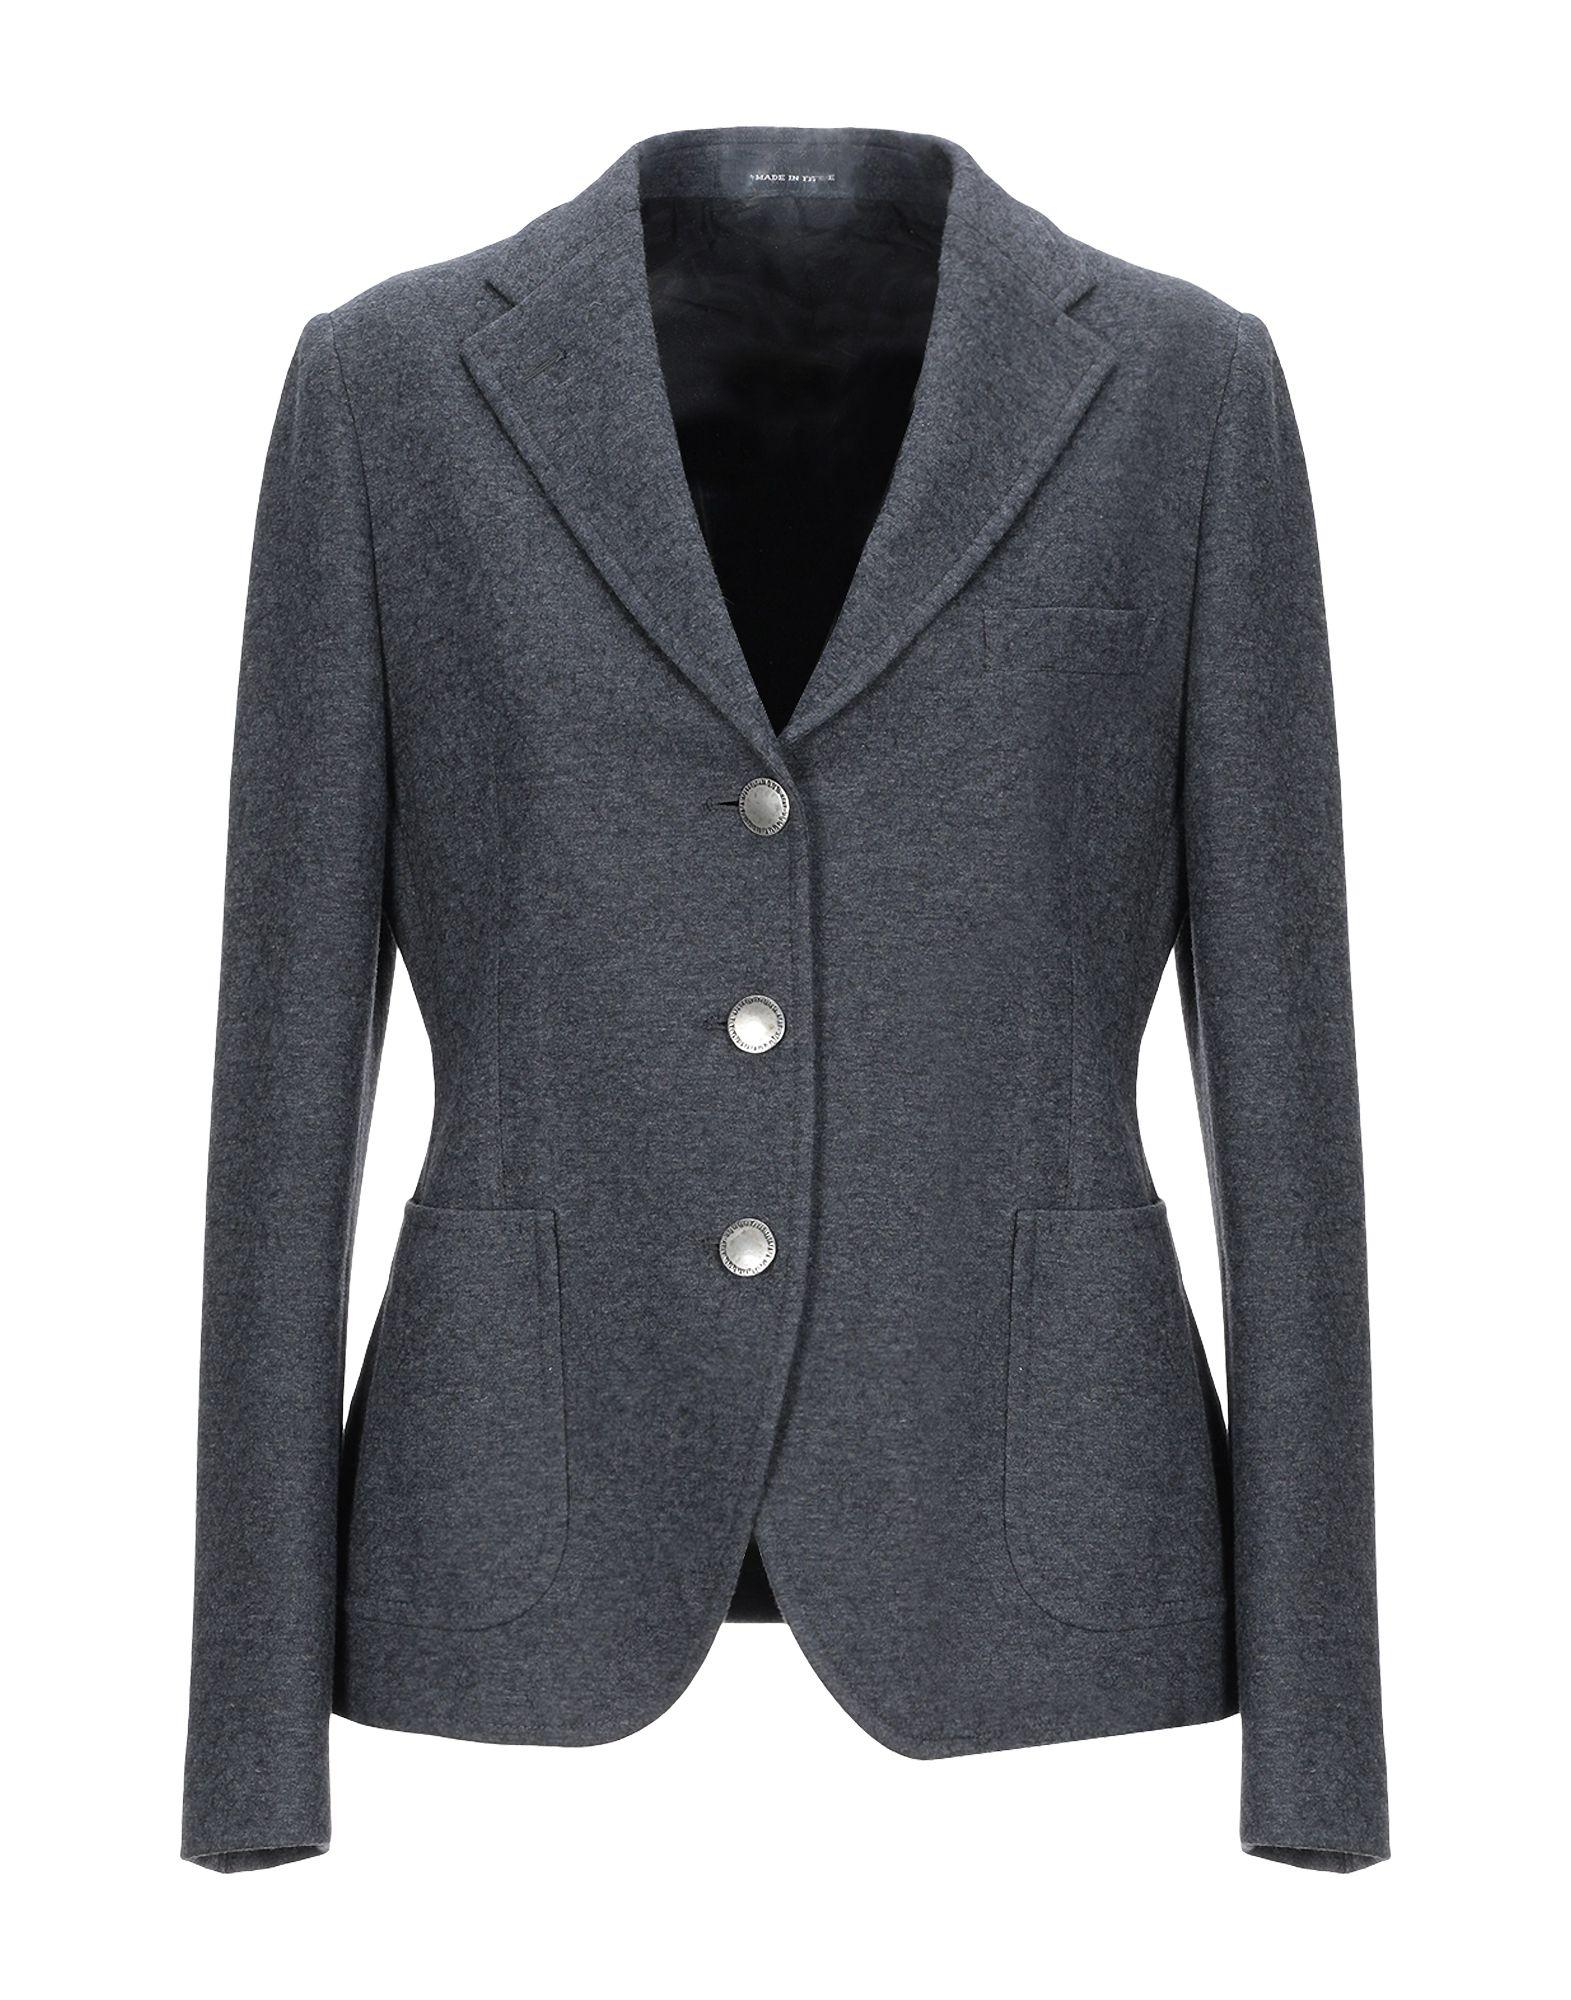 Tagliatore 0205 Cotton Blazer in Grey (Gray) - Lyst